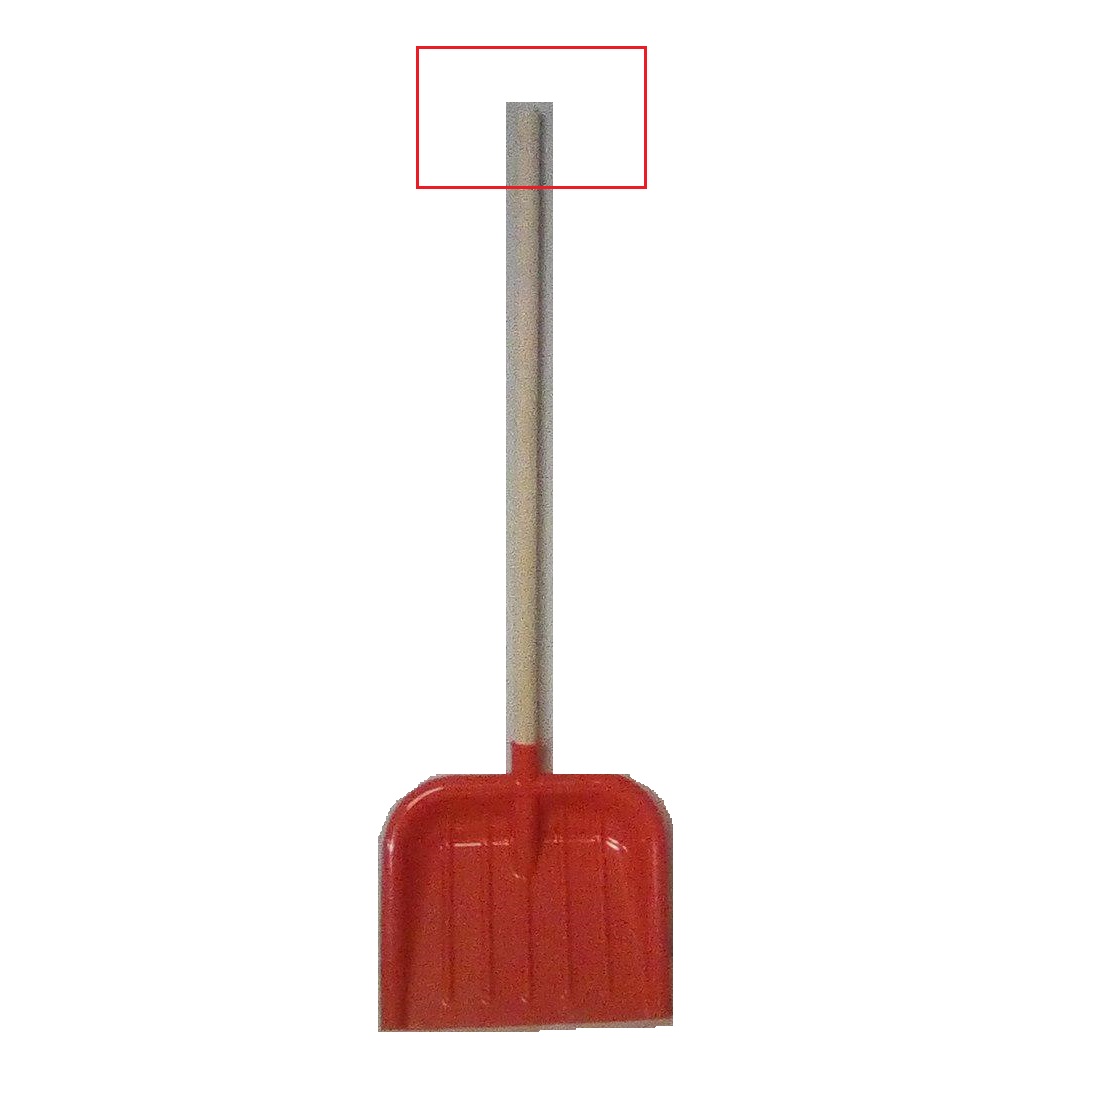 (УЦЕНКА) Детская совковая лопата, красная, 82 см